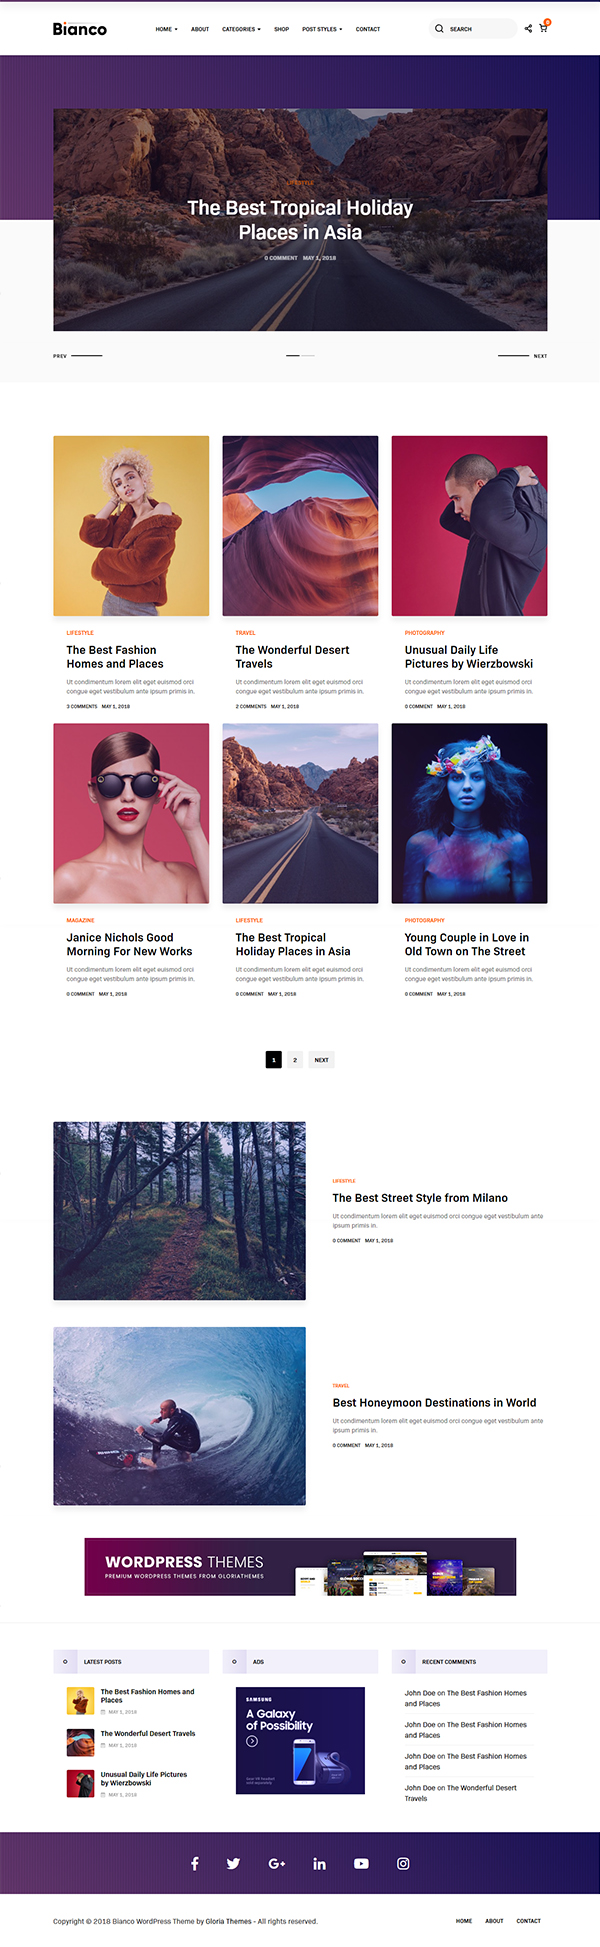 Bianco - A WordPress Blog & Shop Theme